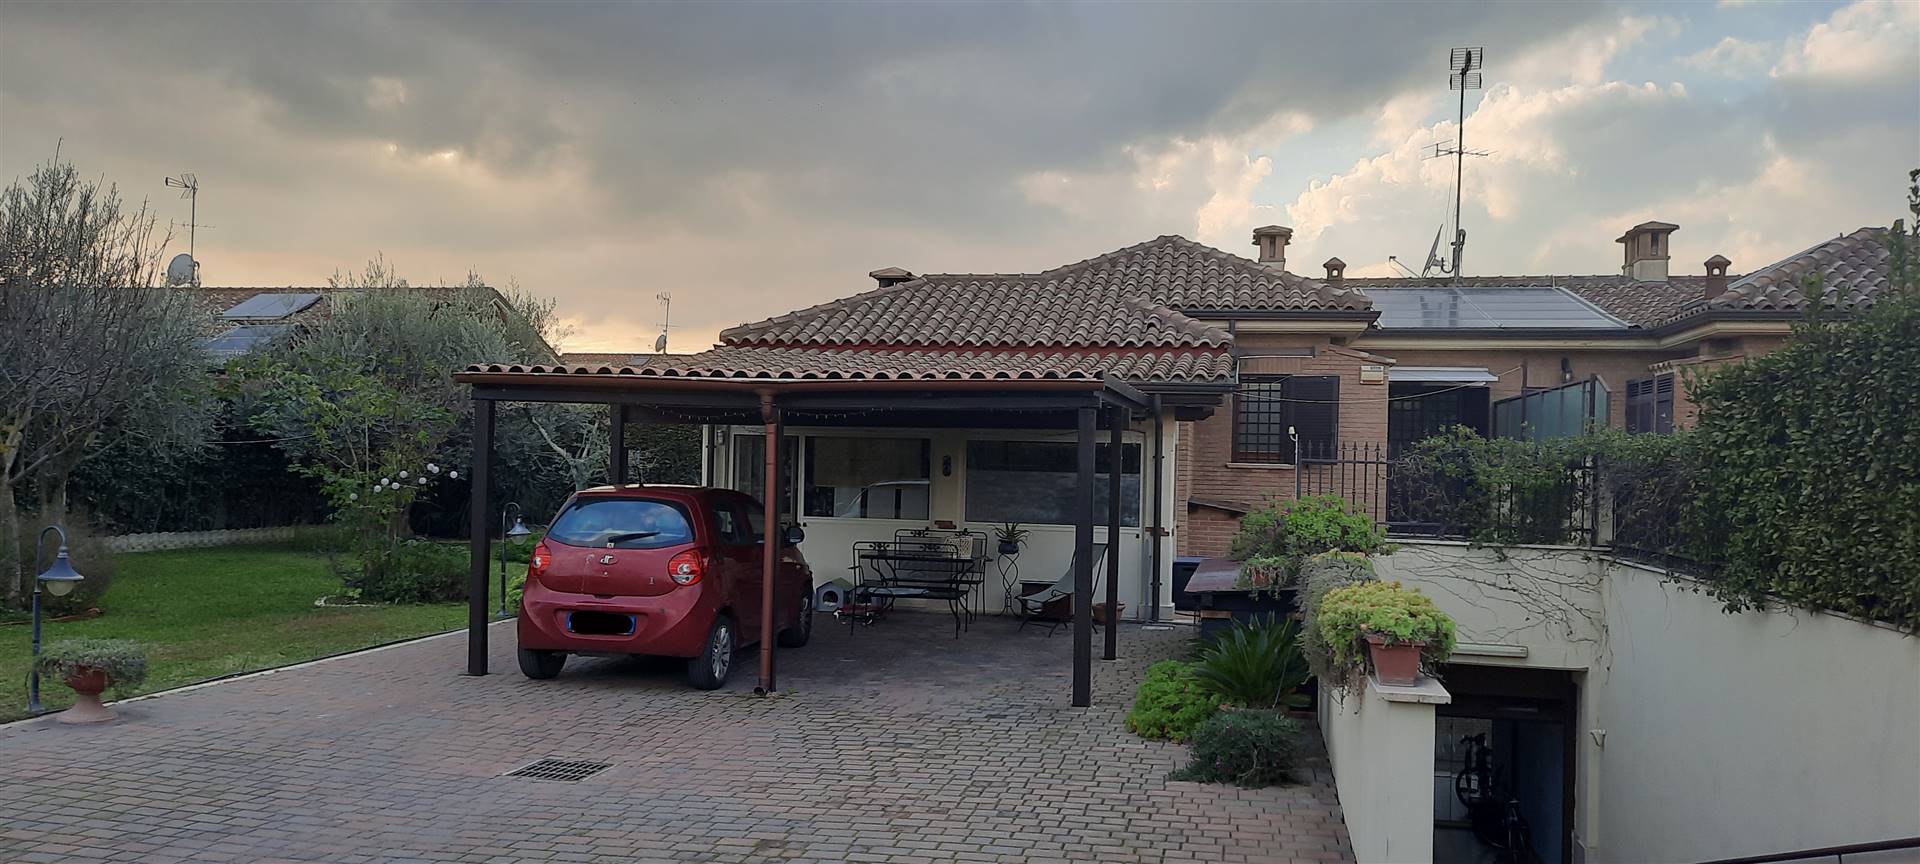 FRATTOCCHIE, MARINO, Villa in vendita di 160 mq totali in ottime condizioni, su 2 livelli: piano terra composto da ampio soggiorno con cucina a vista,